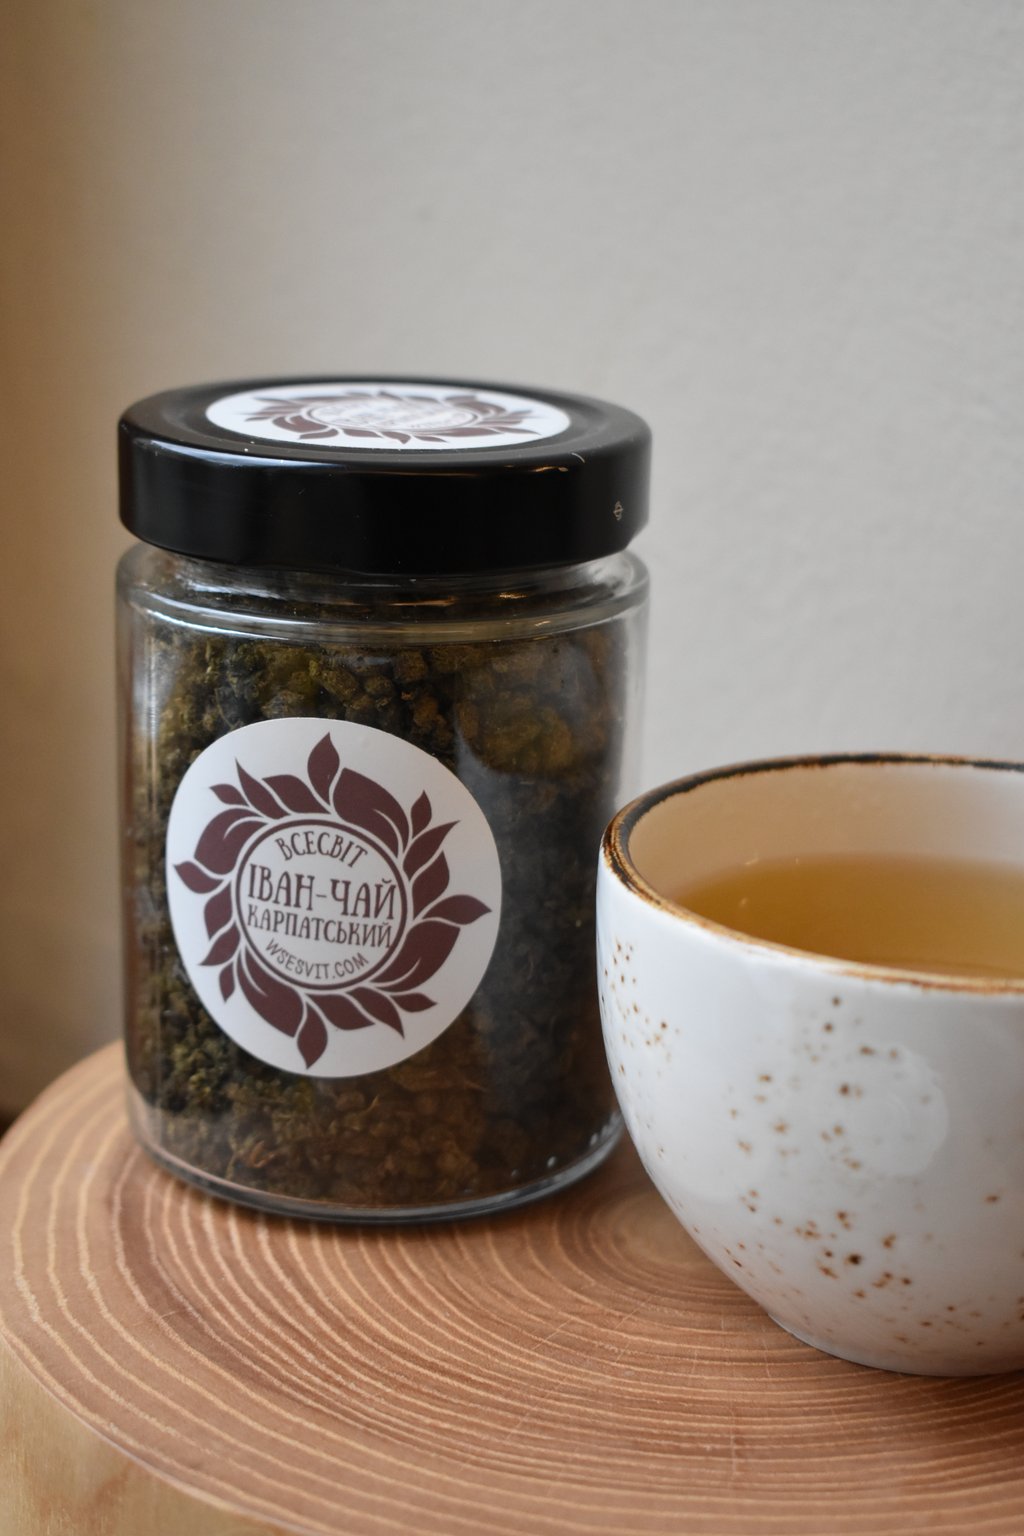 Карпатський Іван-чай / Carpathian herbal tea